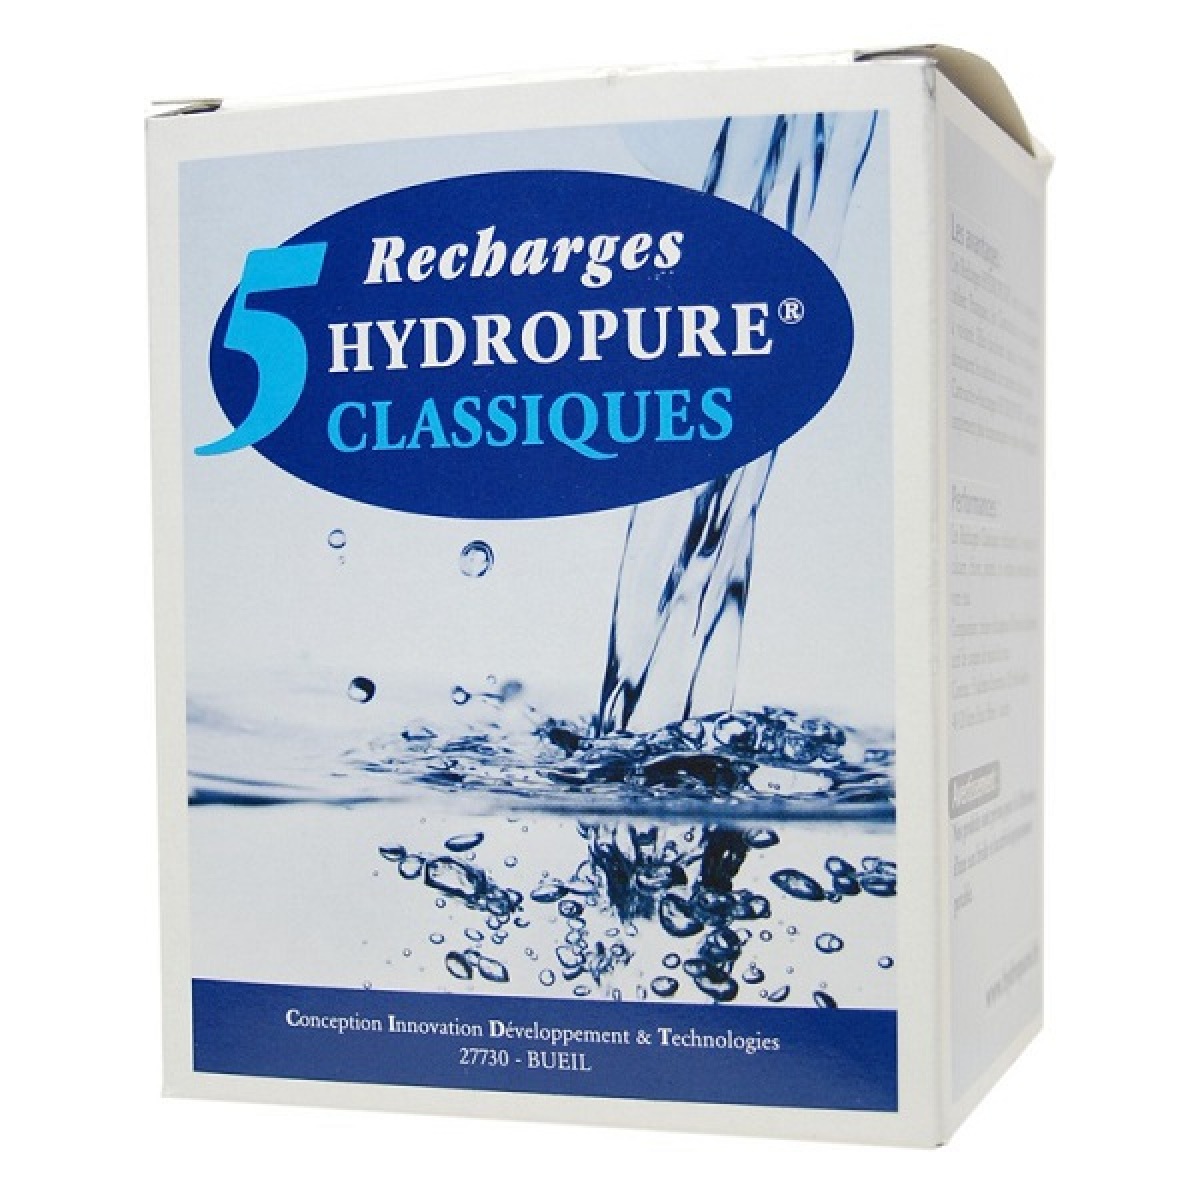 Carafe filtrante Hydropure 5 recharges filtrantes (filtre Classique) - HYDROPURE RC